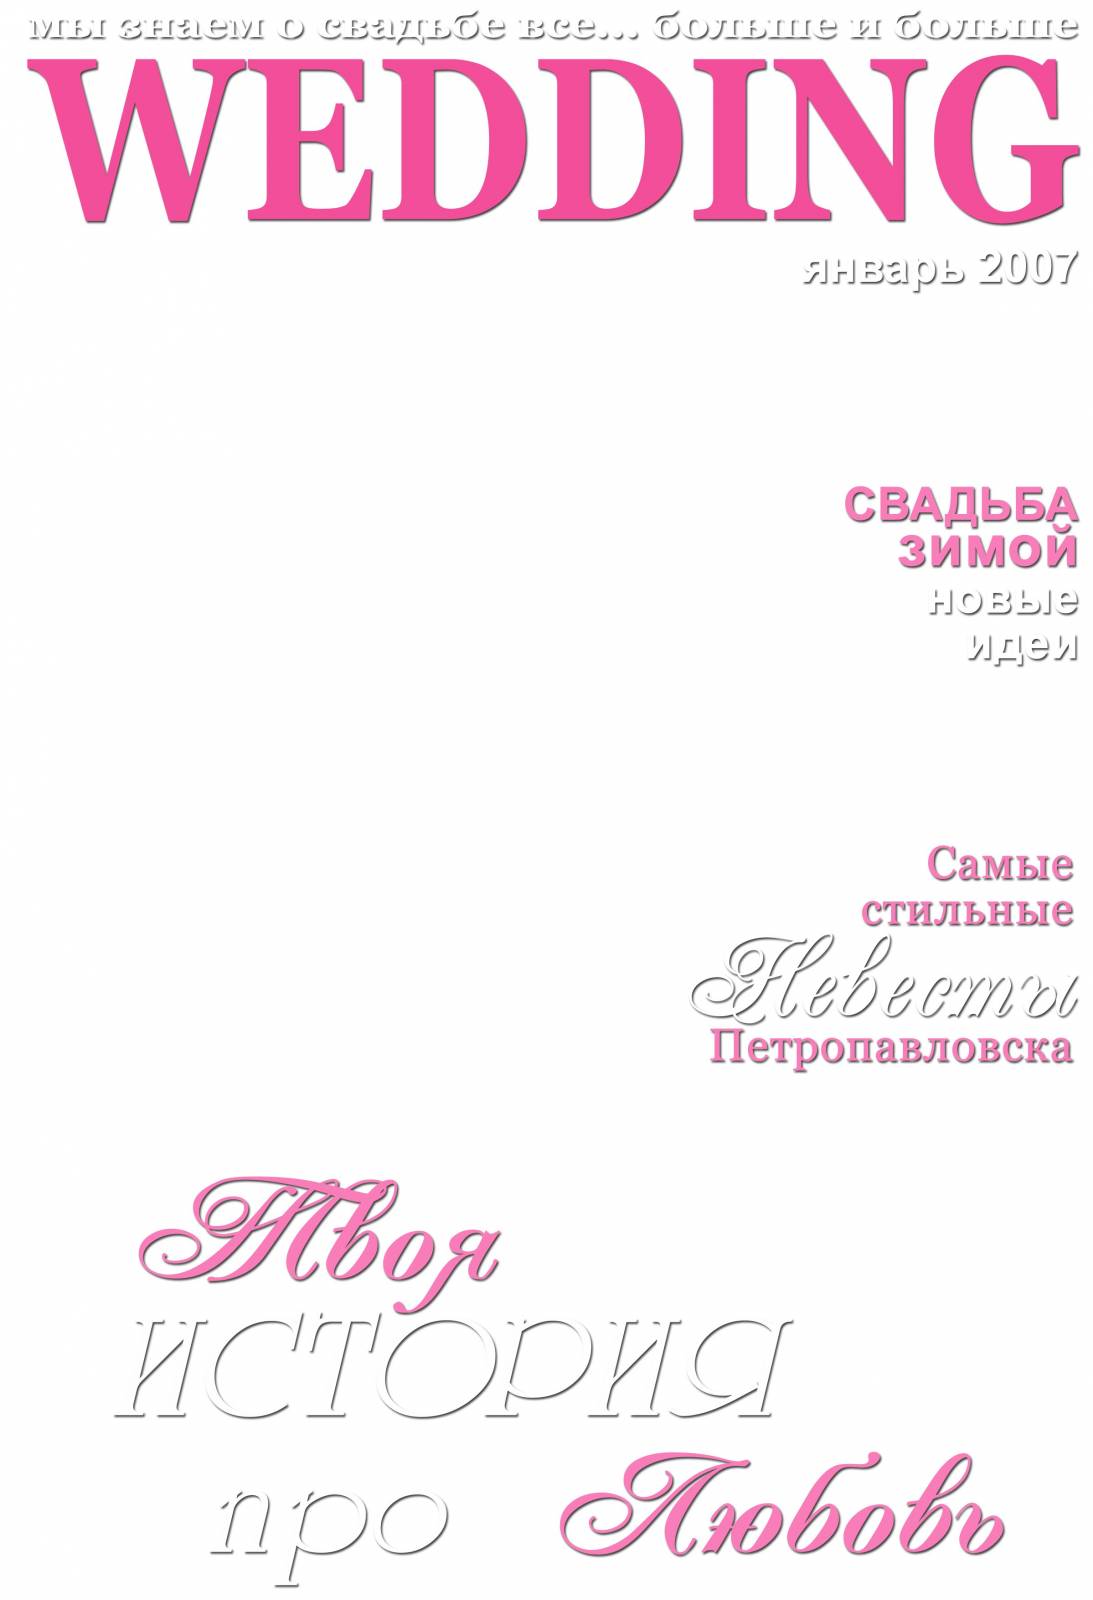 Обложка журнала шаблон